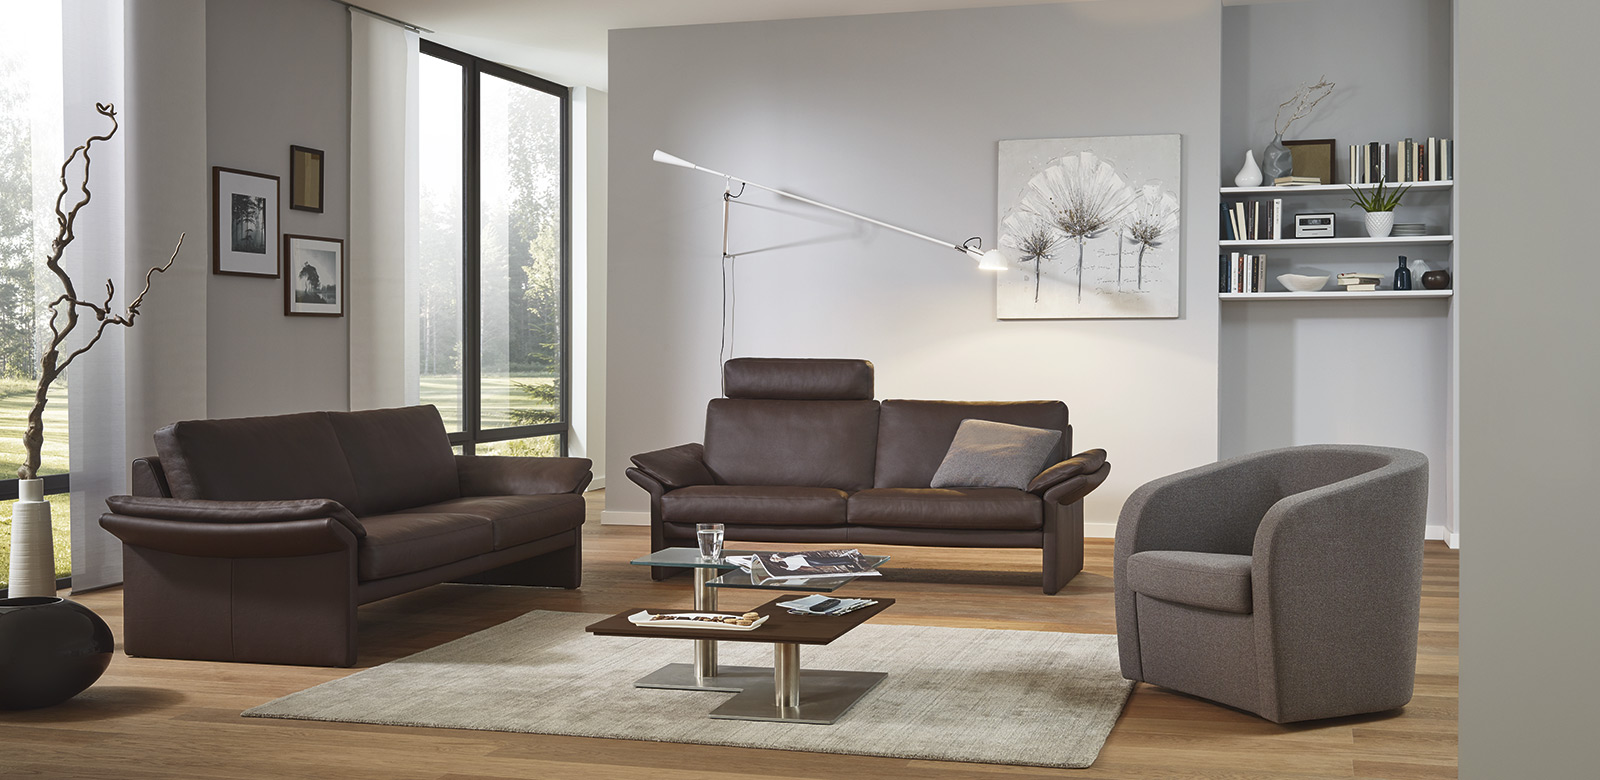 Twee CL910 banken in bruin leer en fauteuils in grijze stof in een moderne woonkamer en terras met uitzicht op het grote pand